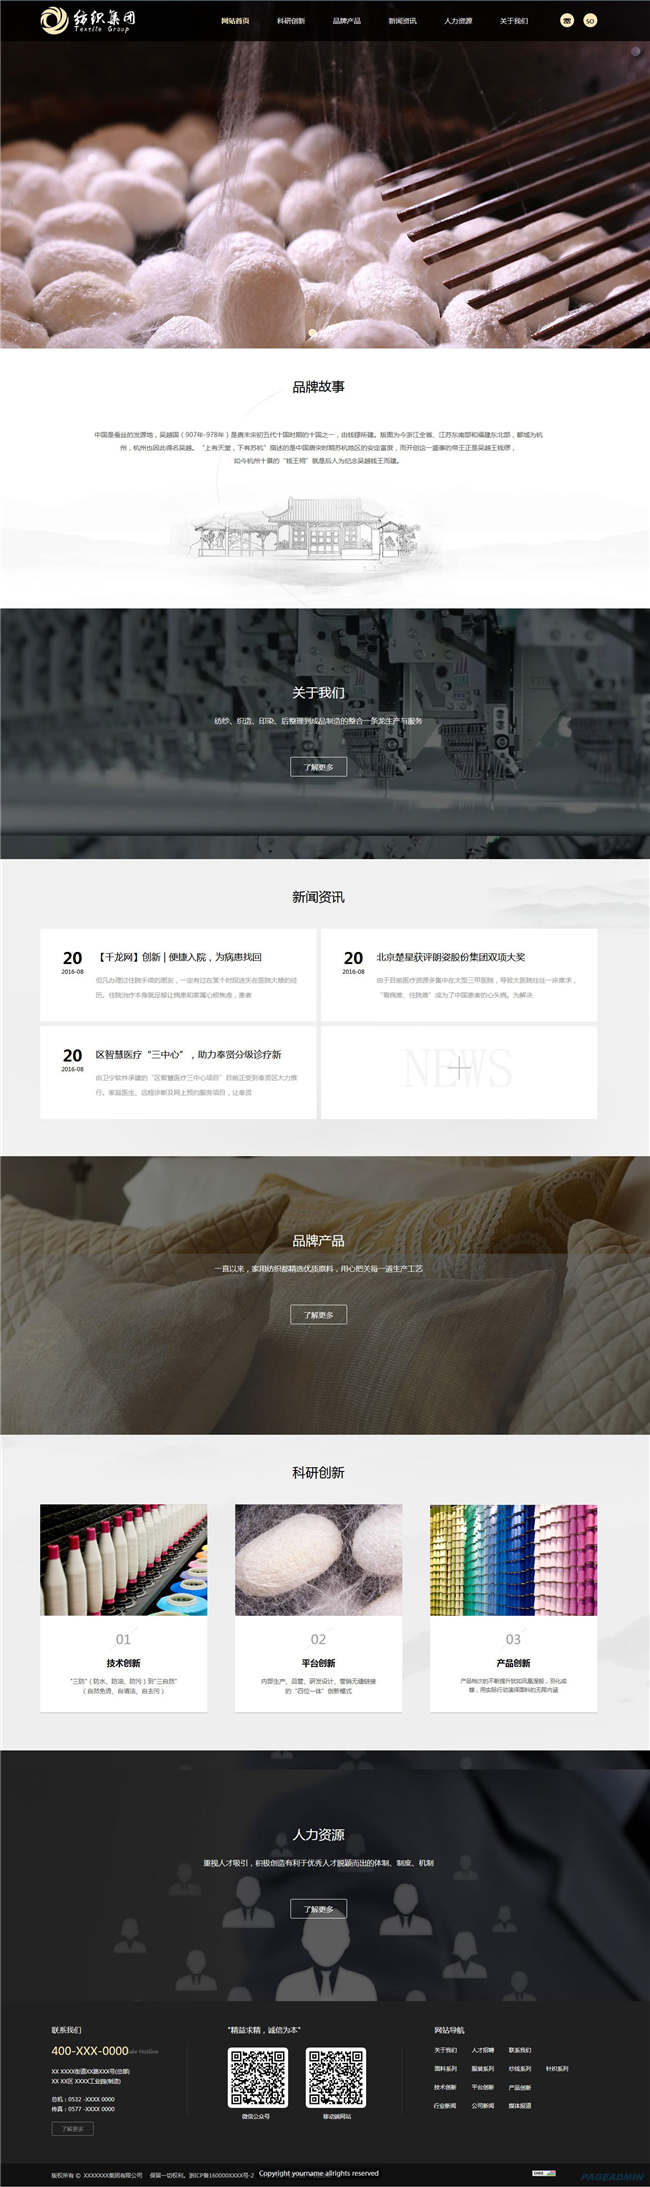 纺织公司纺织服饰鞋帽箱包网站WP整站模板(含手机版)预览图